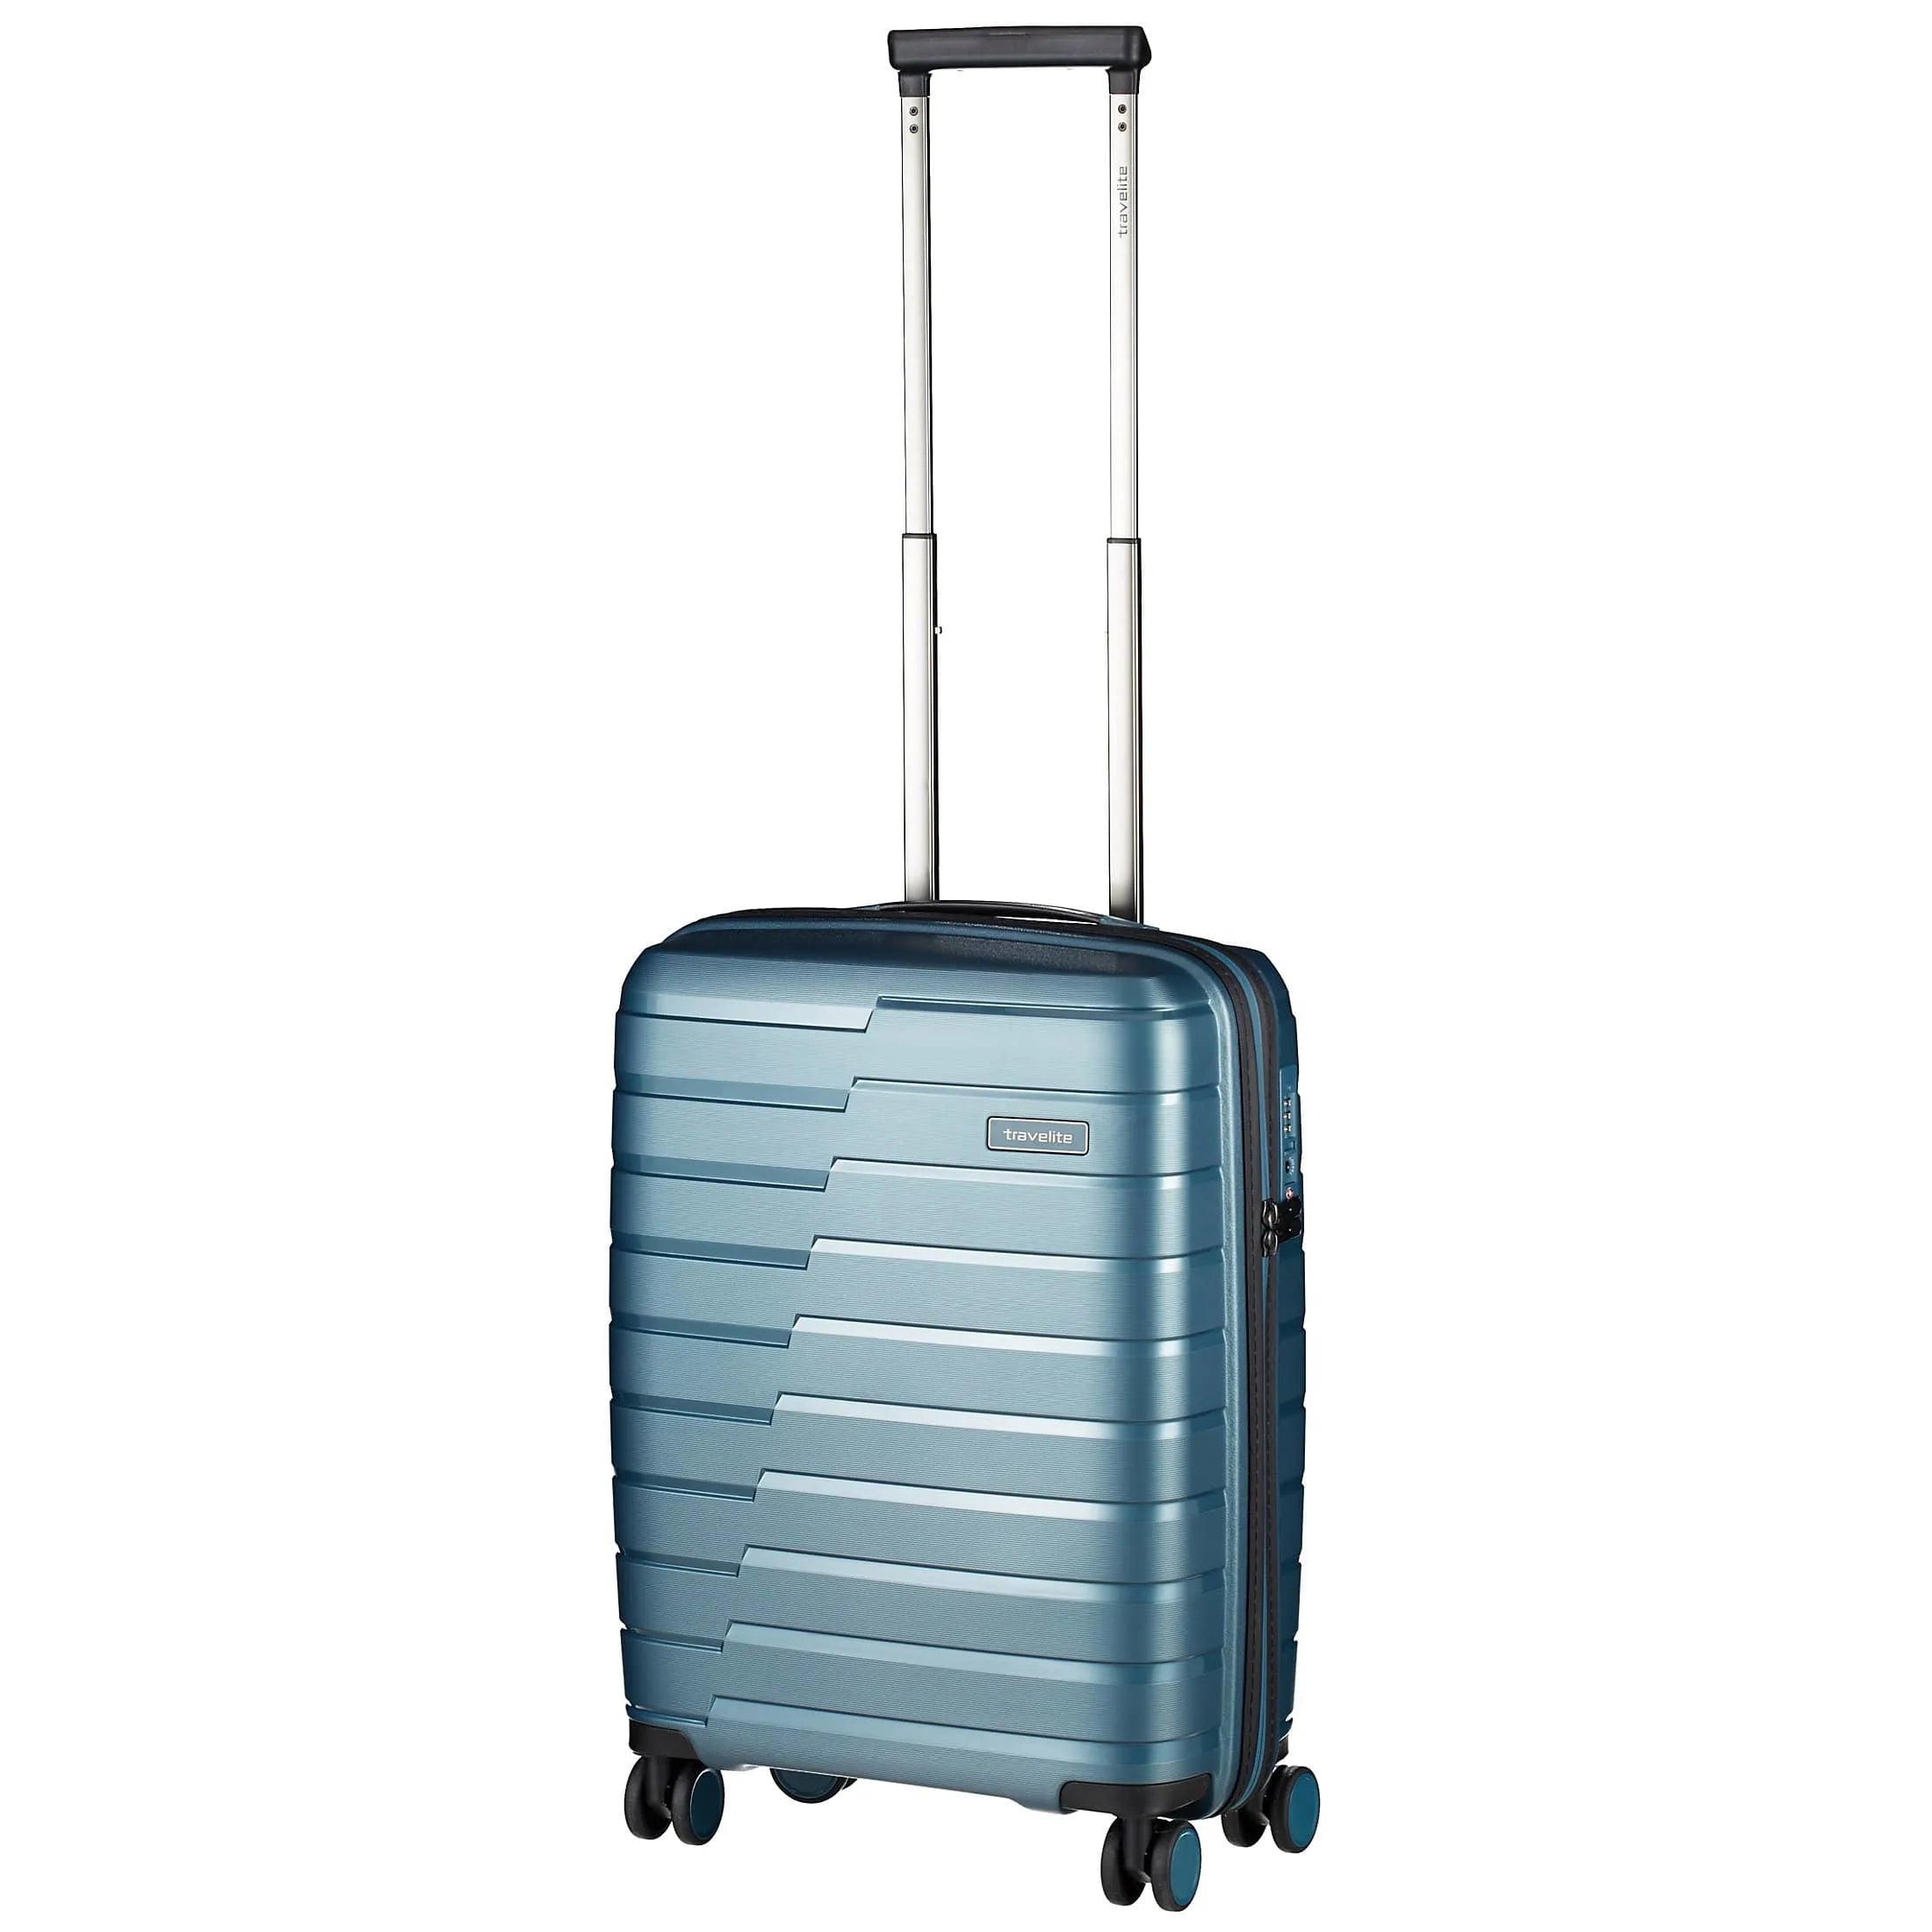 Handgepäck-Koffer: Die besten Modelle für die Bordkabine